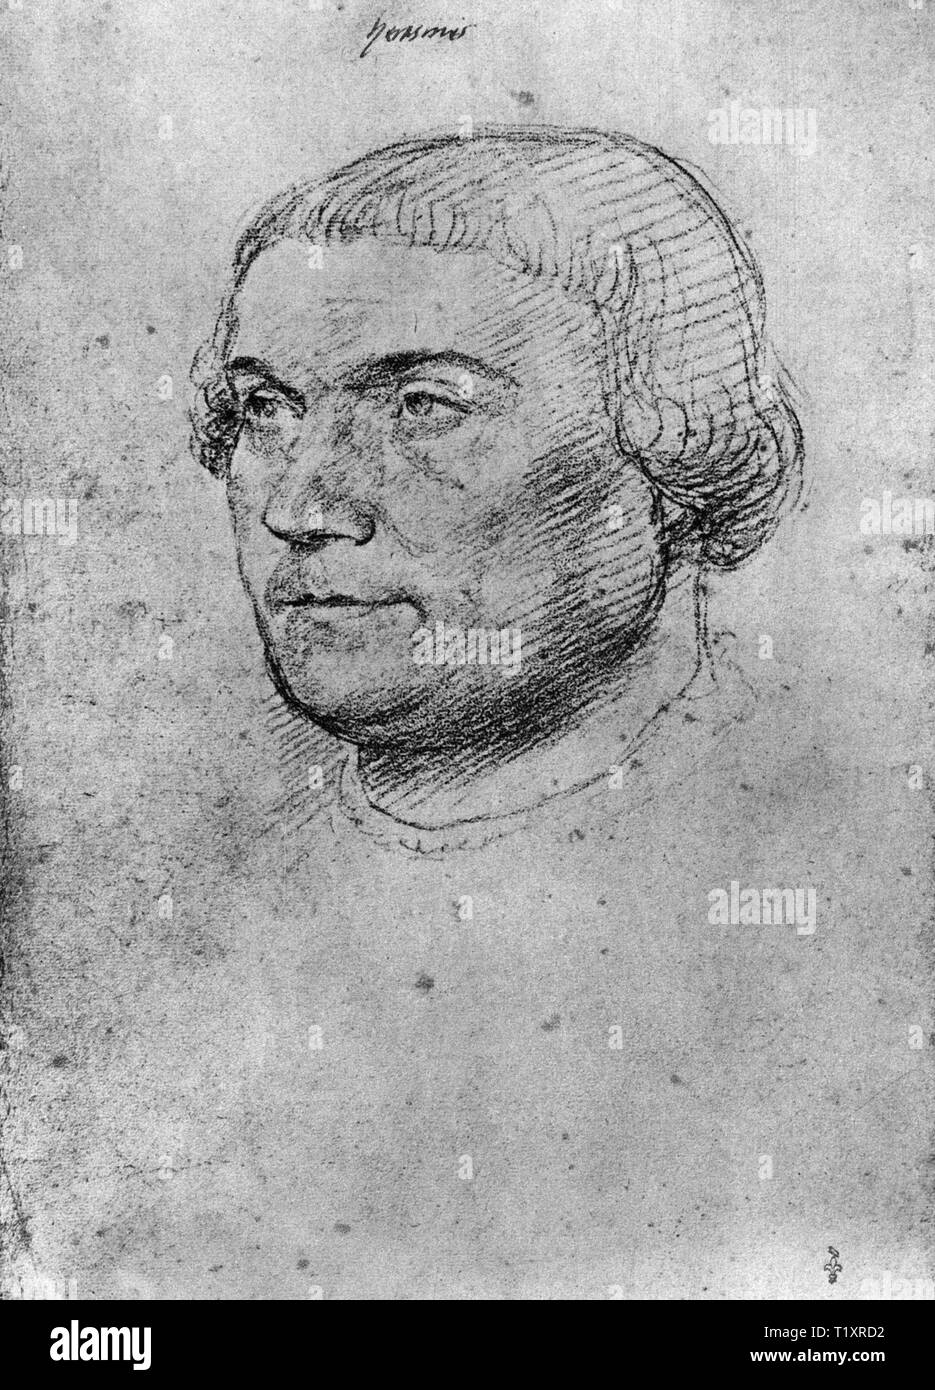 Bildende Kunst, Jean Clouet (1480-1541), Zeichnung, Erasmus Desiderius von Rotterdam, Porträt, 1520, Additional-Rights - Clearance-Info - Not-Available Stockfoto